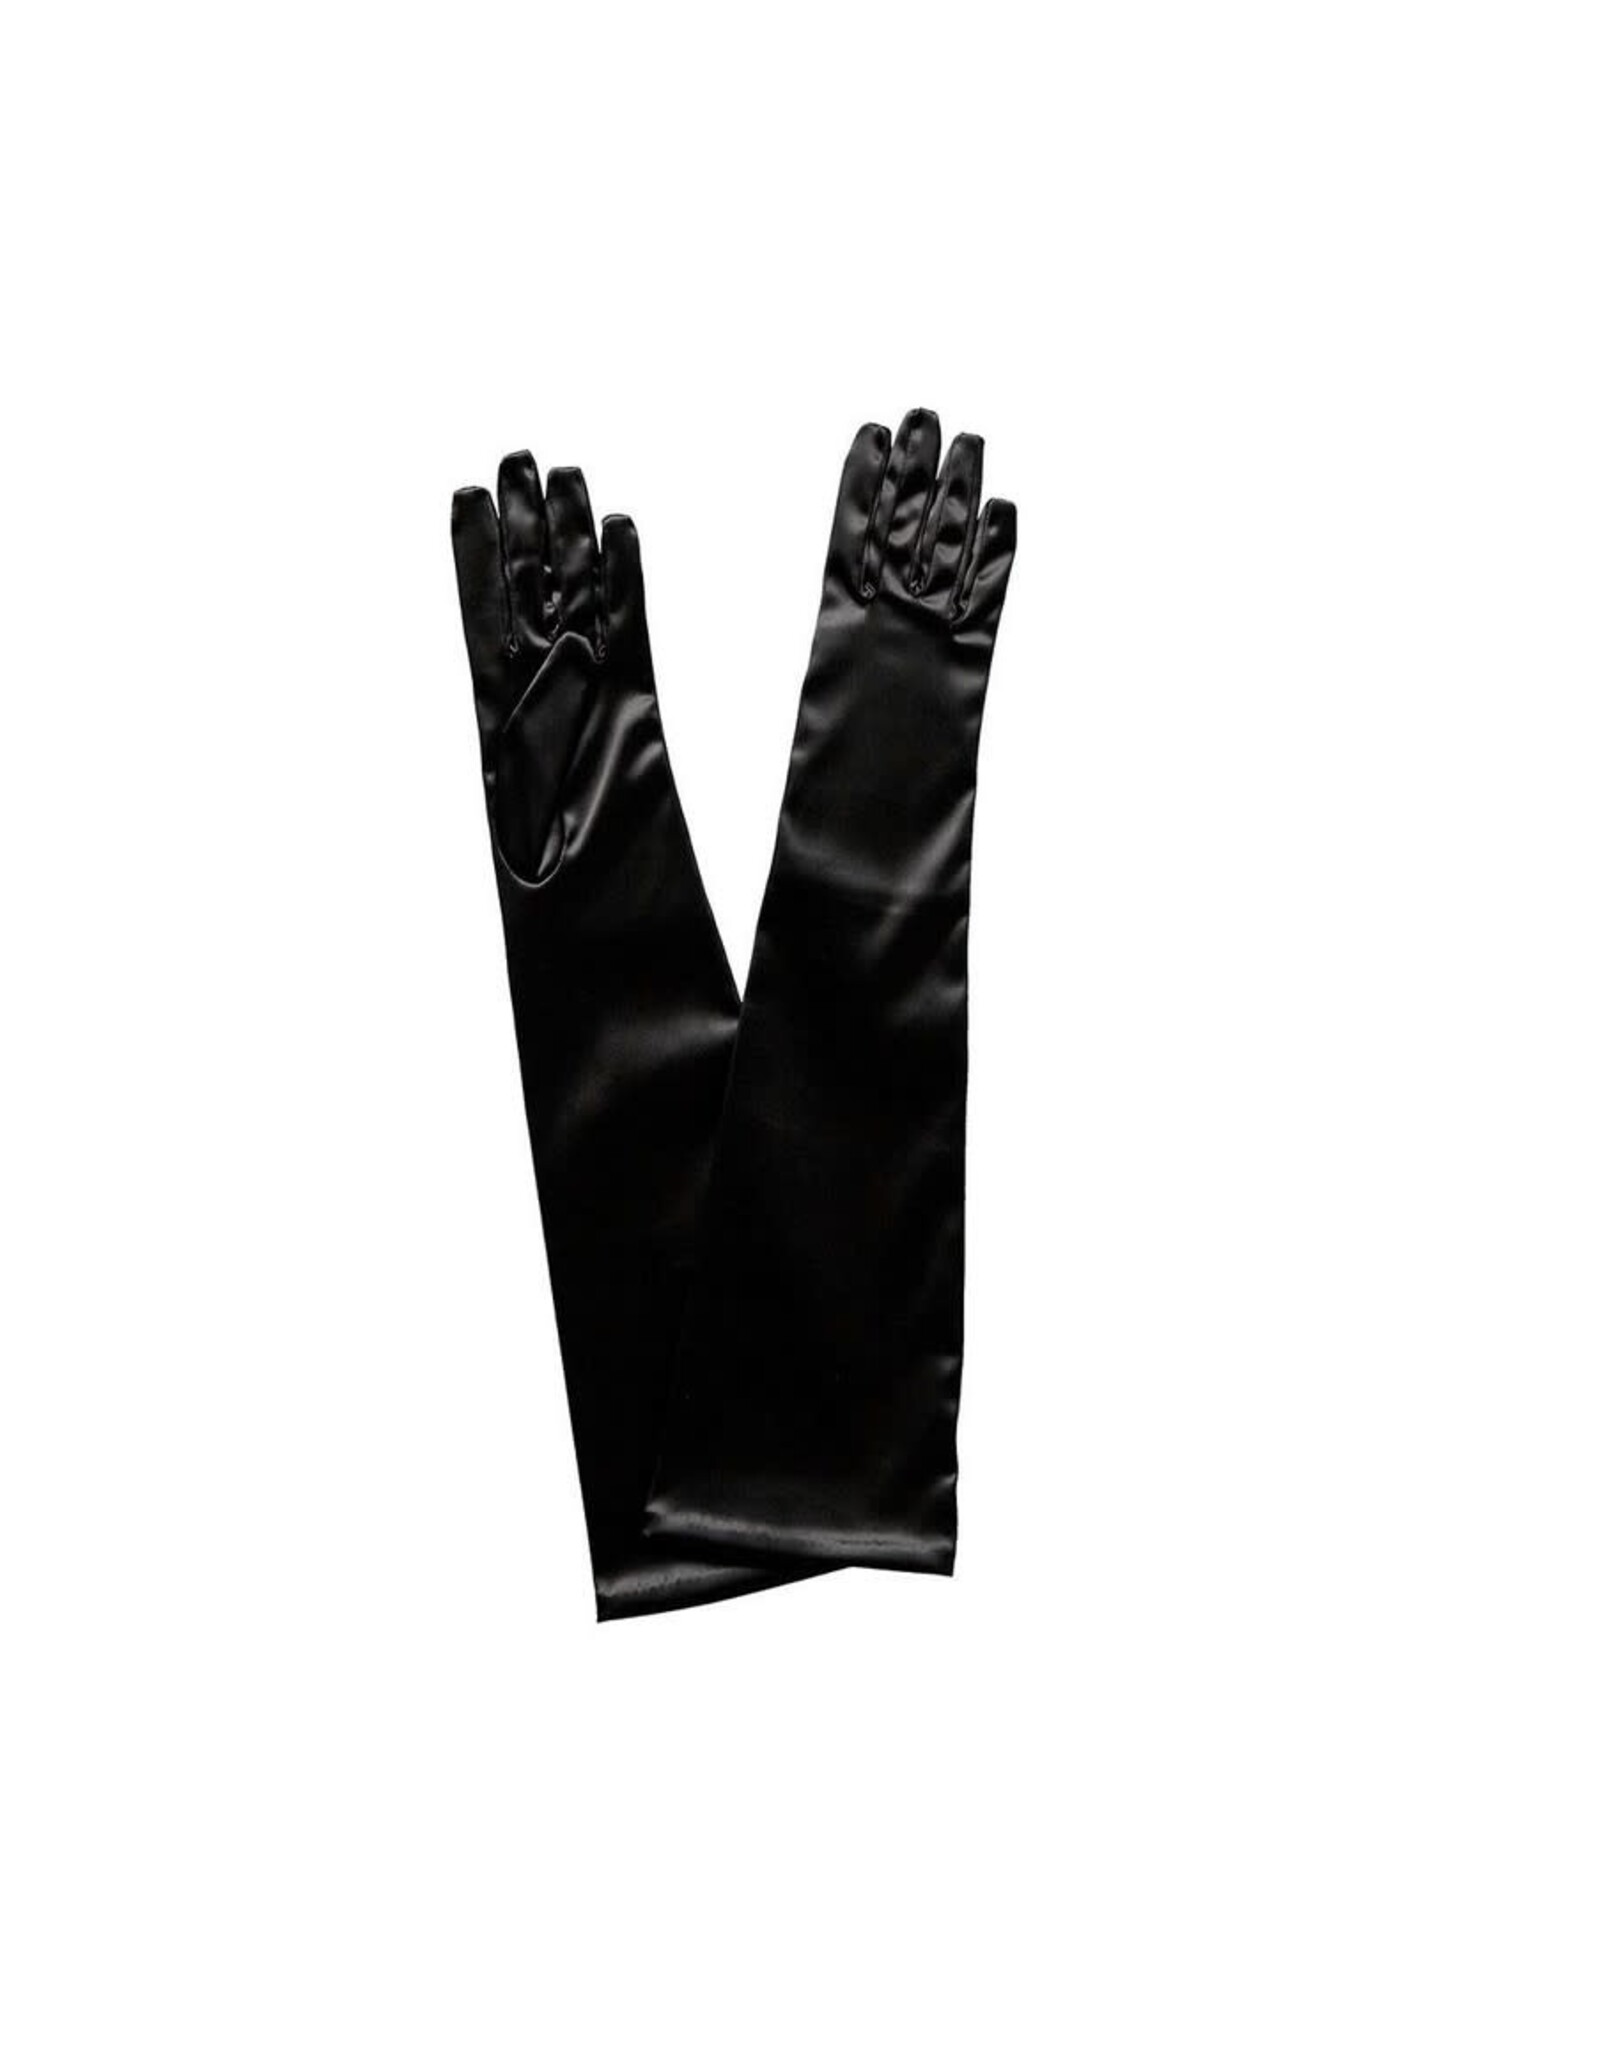 fH2 Children's Elbow Length Black Satin Gloves